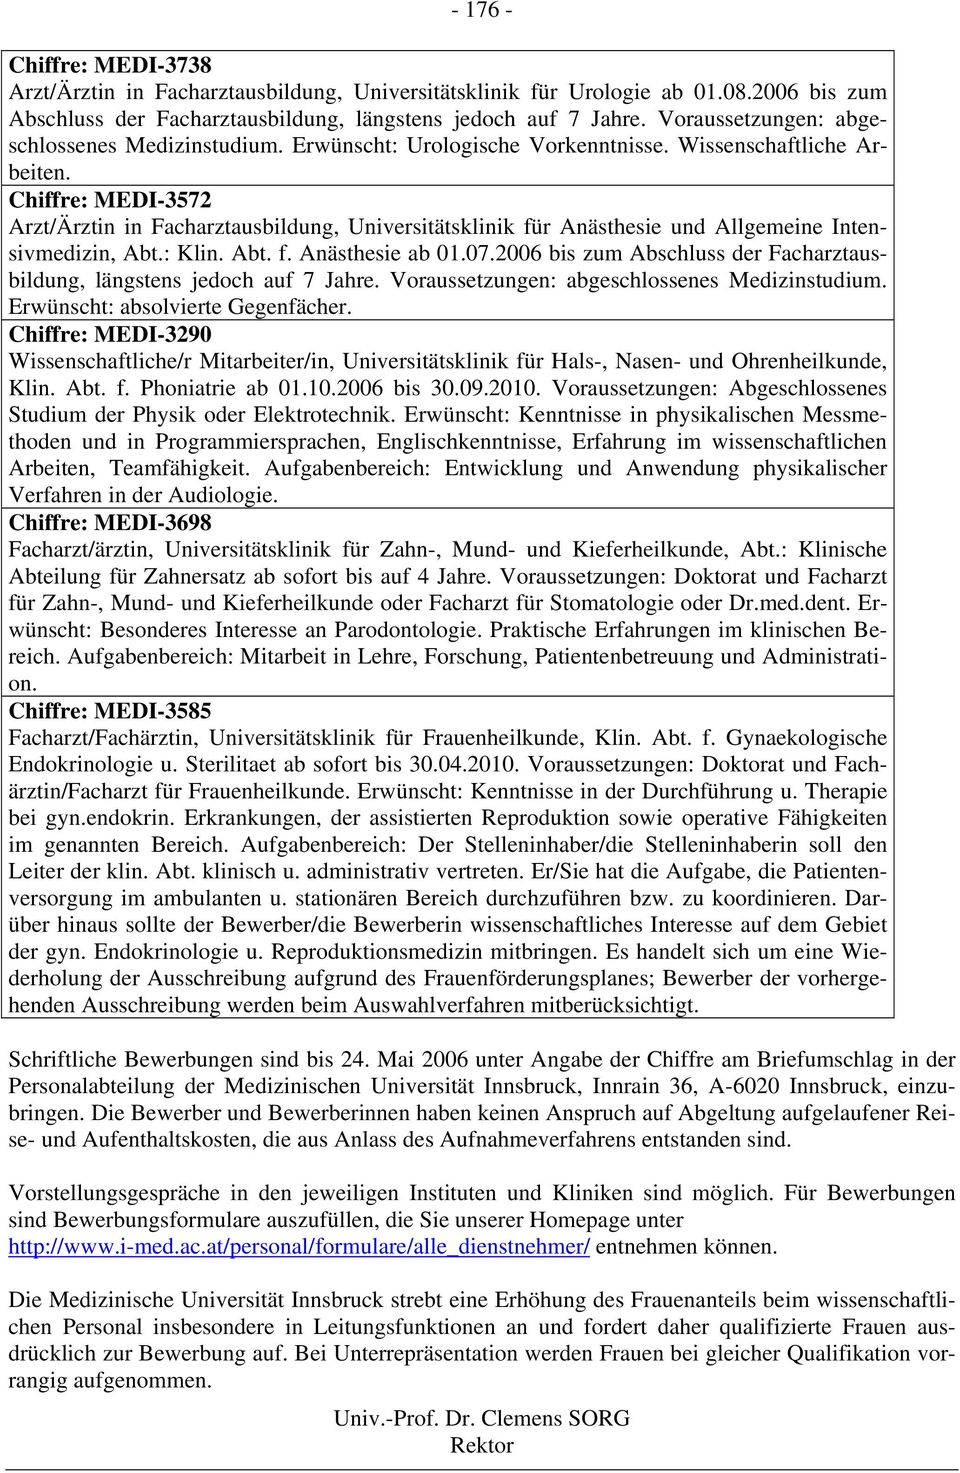 Chiffre: MEDI-3572 Arzt/Ärztin in Facharztausbildung, Universitätsklinik für Anästhesie und Allgemeine Intensivmedizin, Abt.: Klin. Abt. f. Anästhesie ab 01.07.